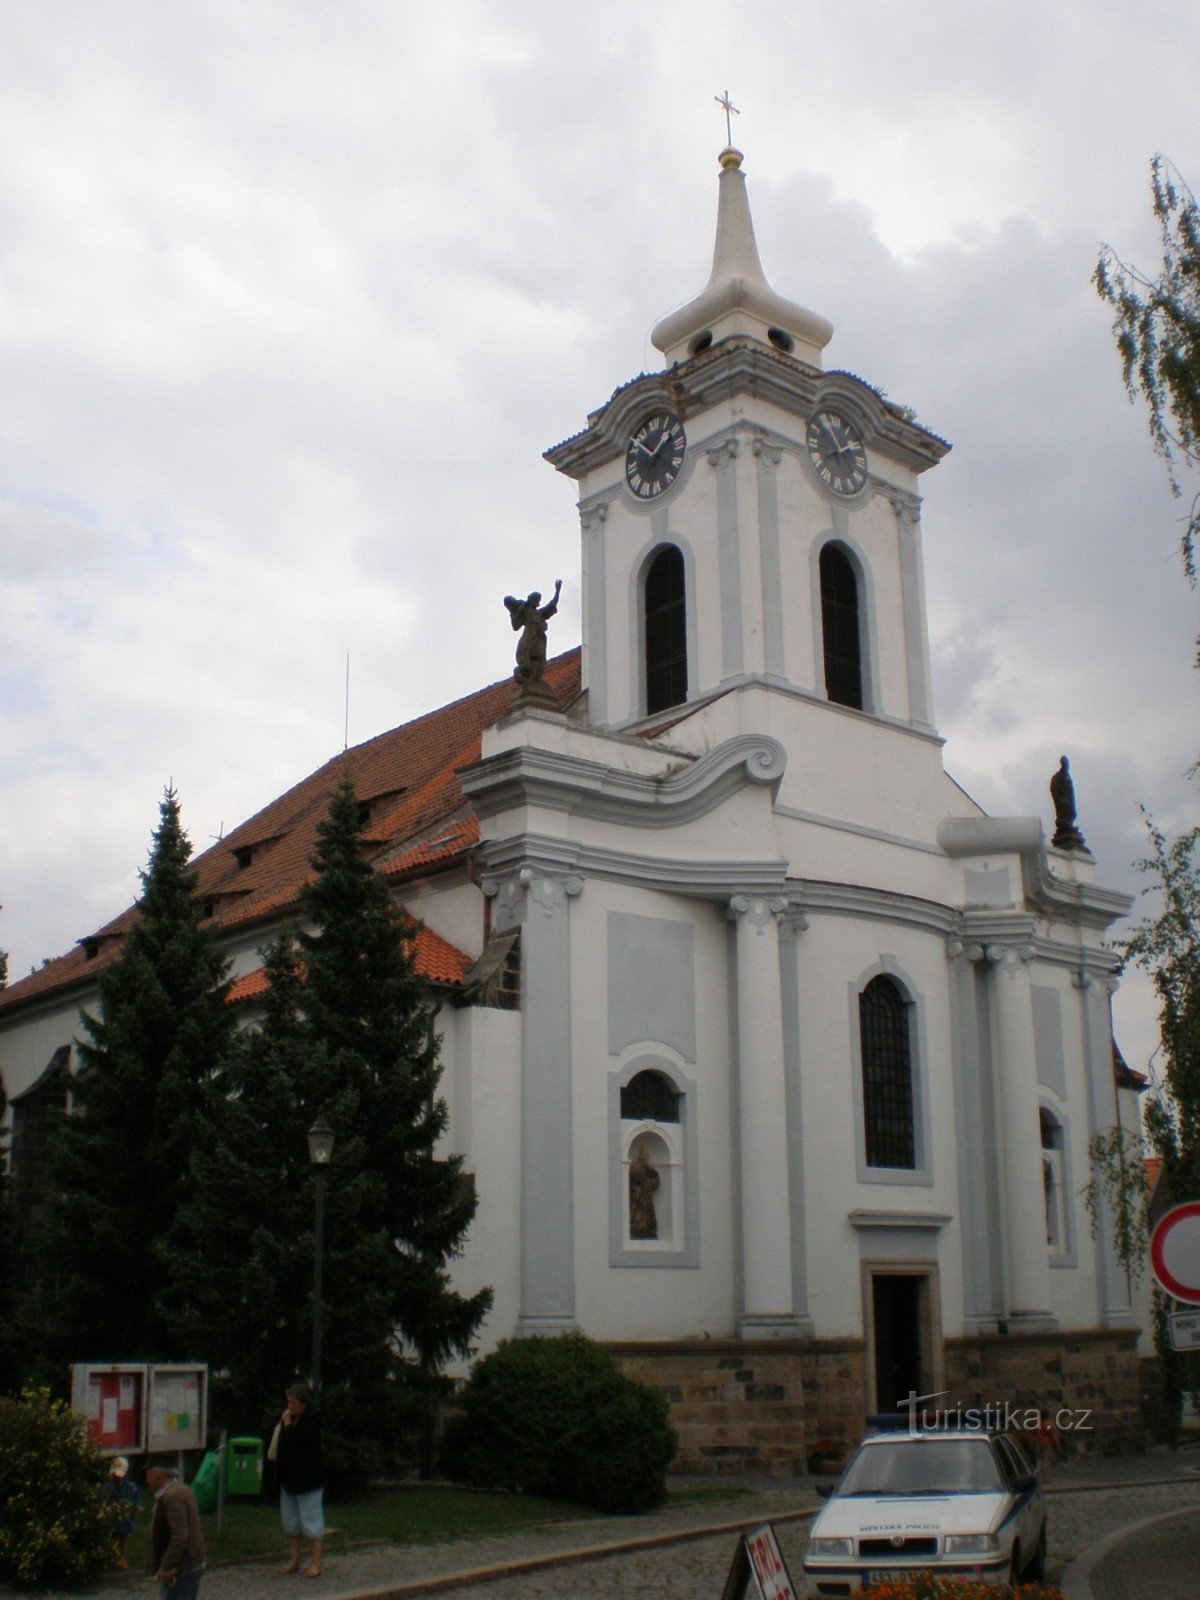 Český Brod - église de St. Gothard